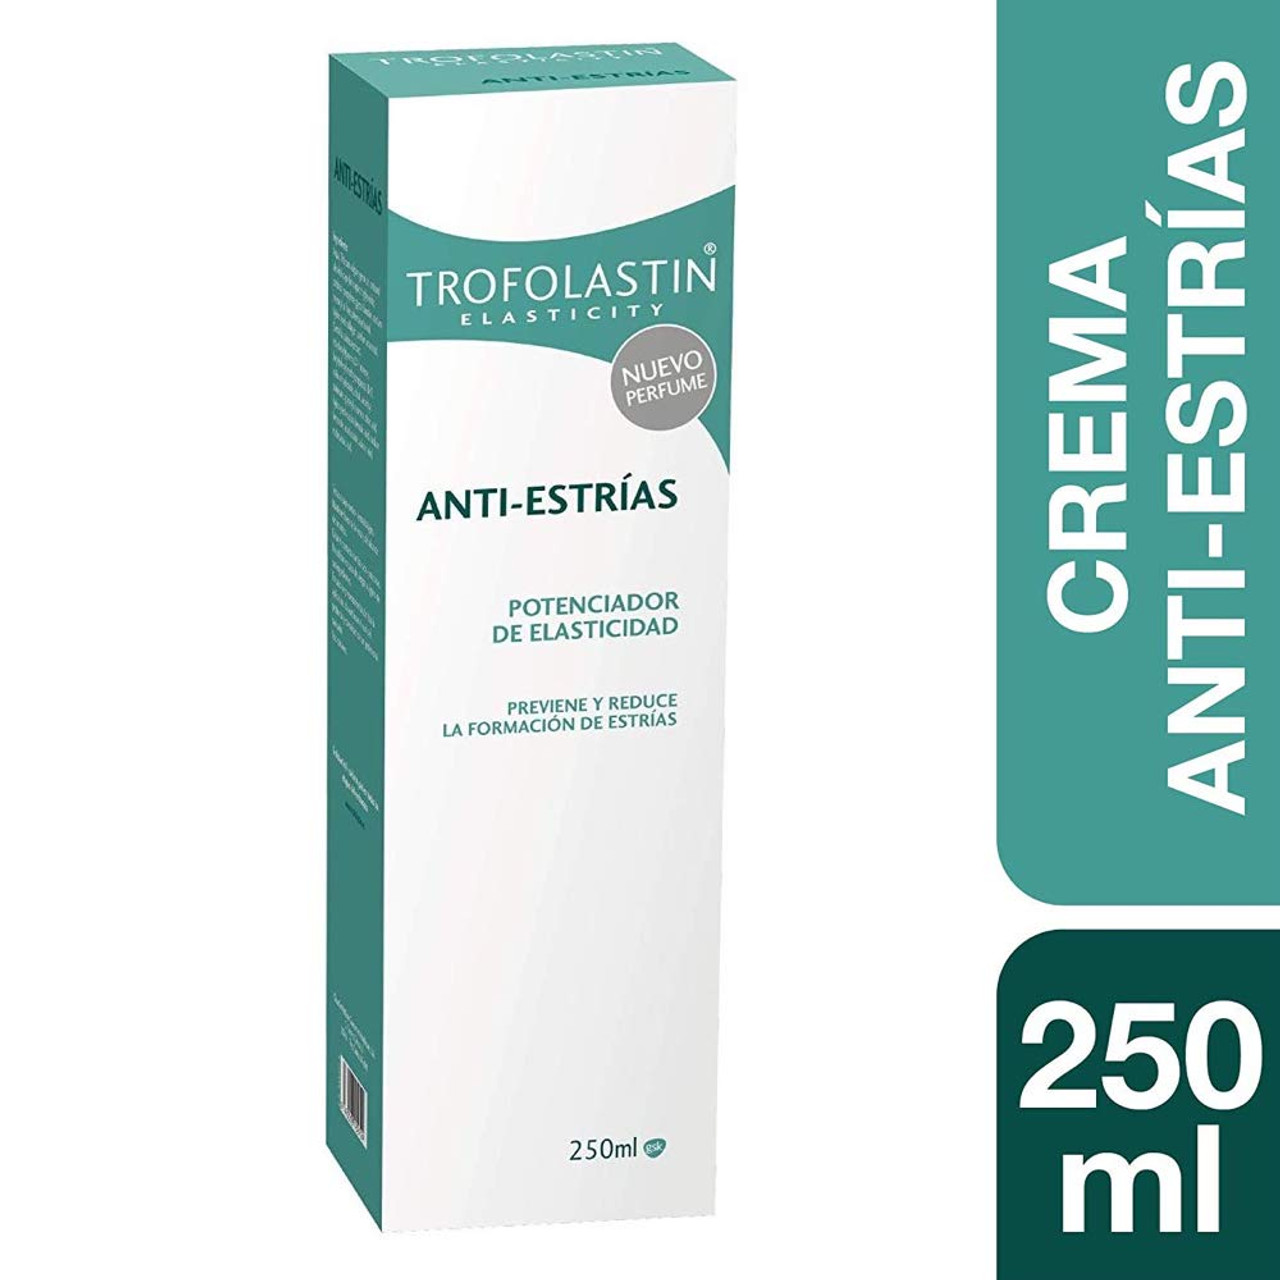 Trofolastin crema antiestrías 250ml Trofolastin